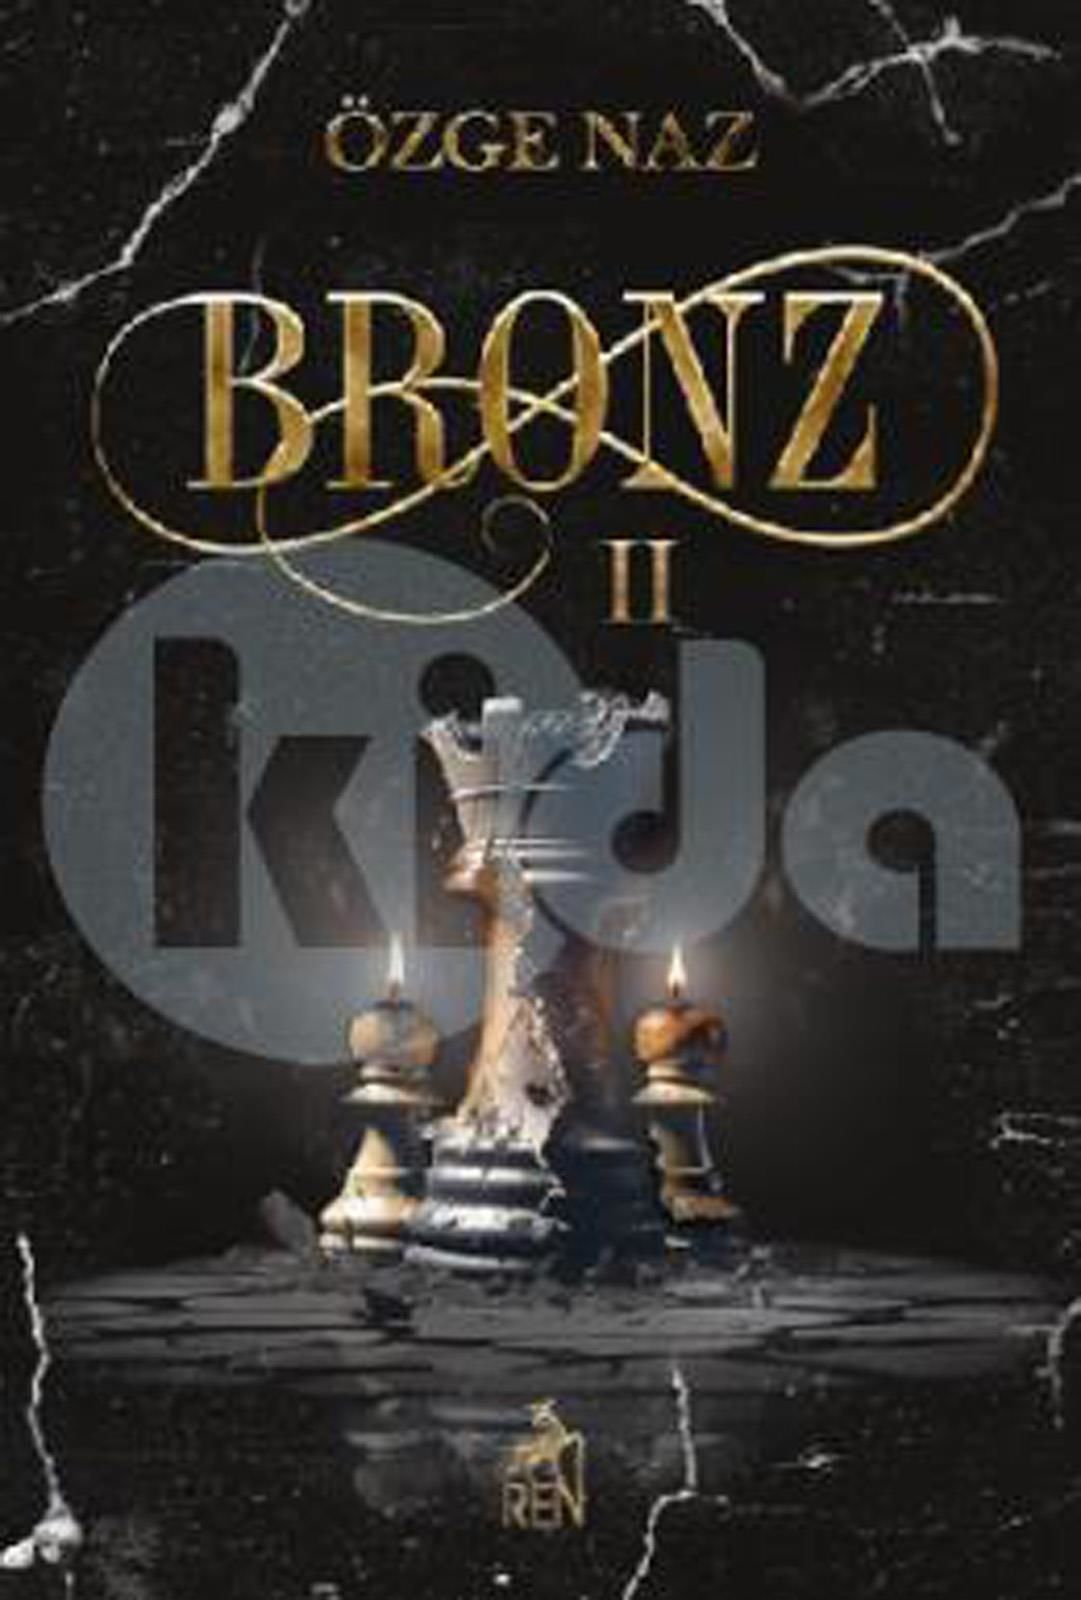 Bronz 2